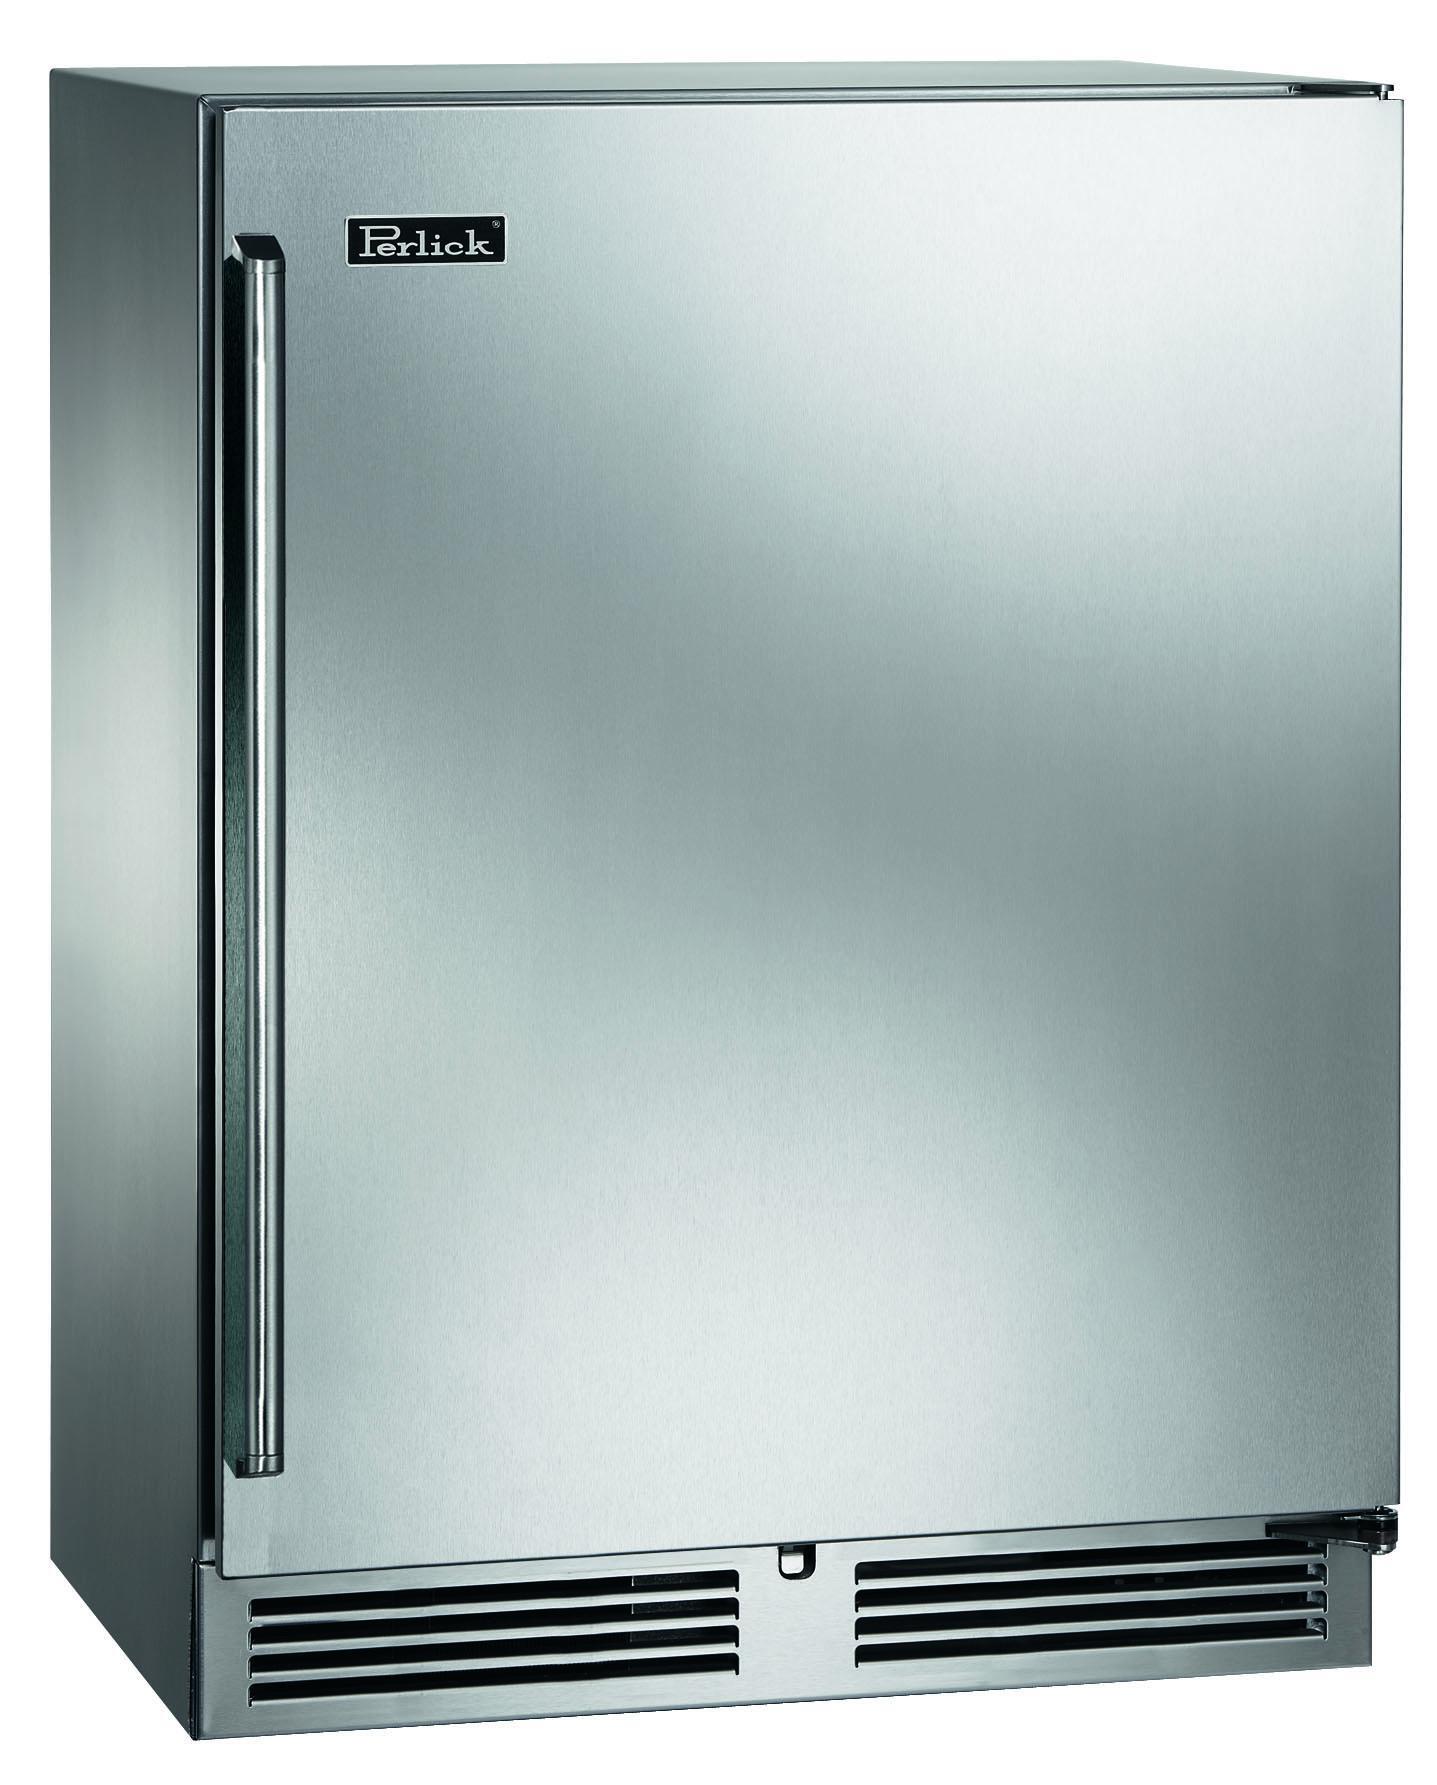 Perlick HH24RS41L 24" Refrigerator